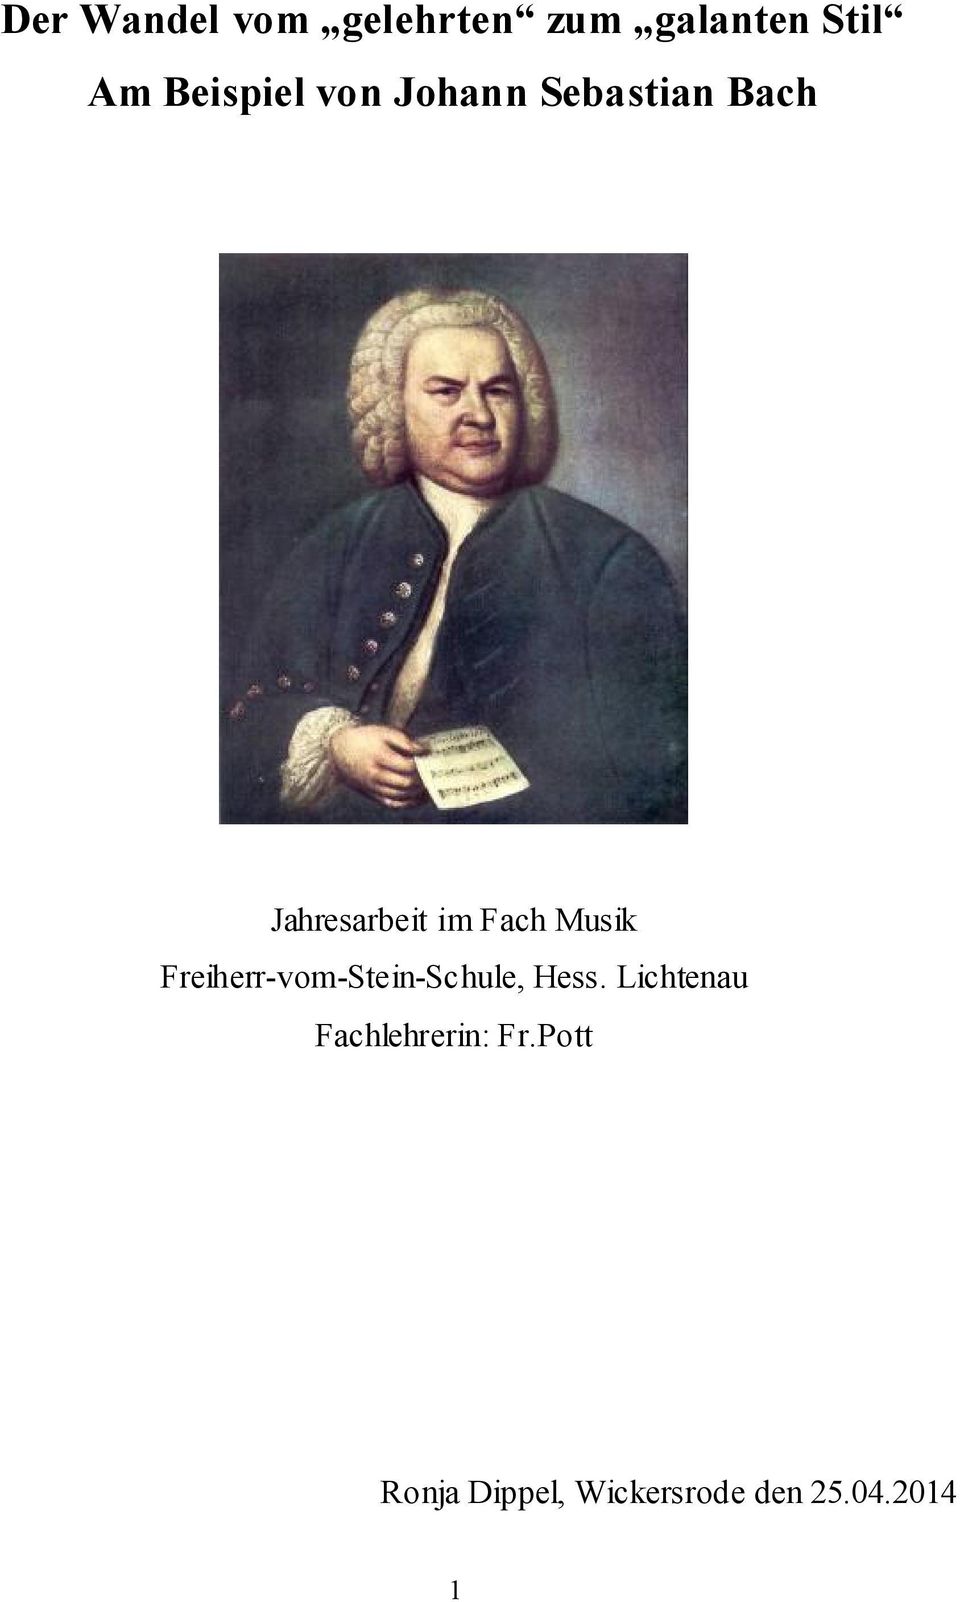 Fach Musik Freiherr-vom-Stein-Schule, Hess.